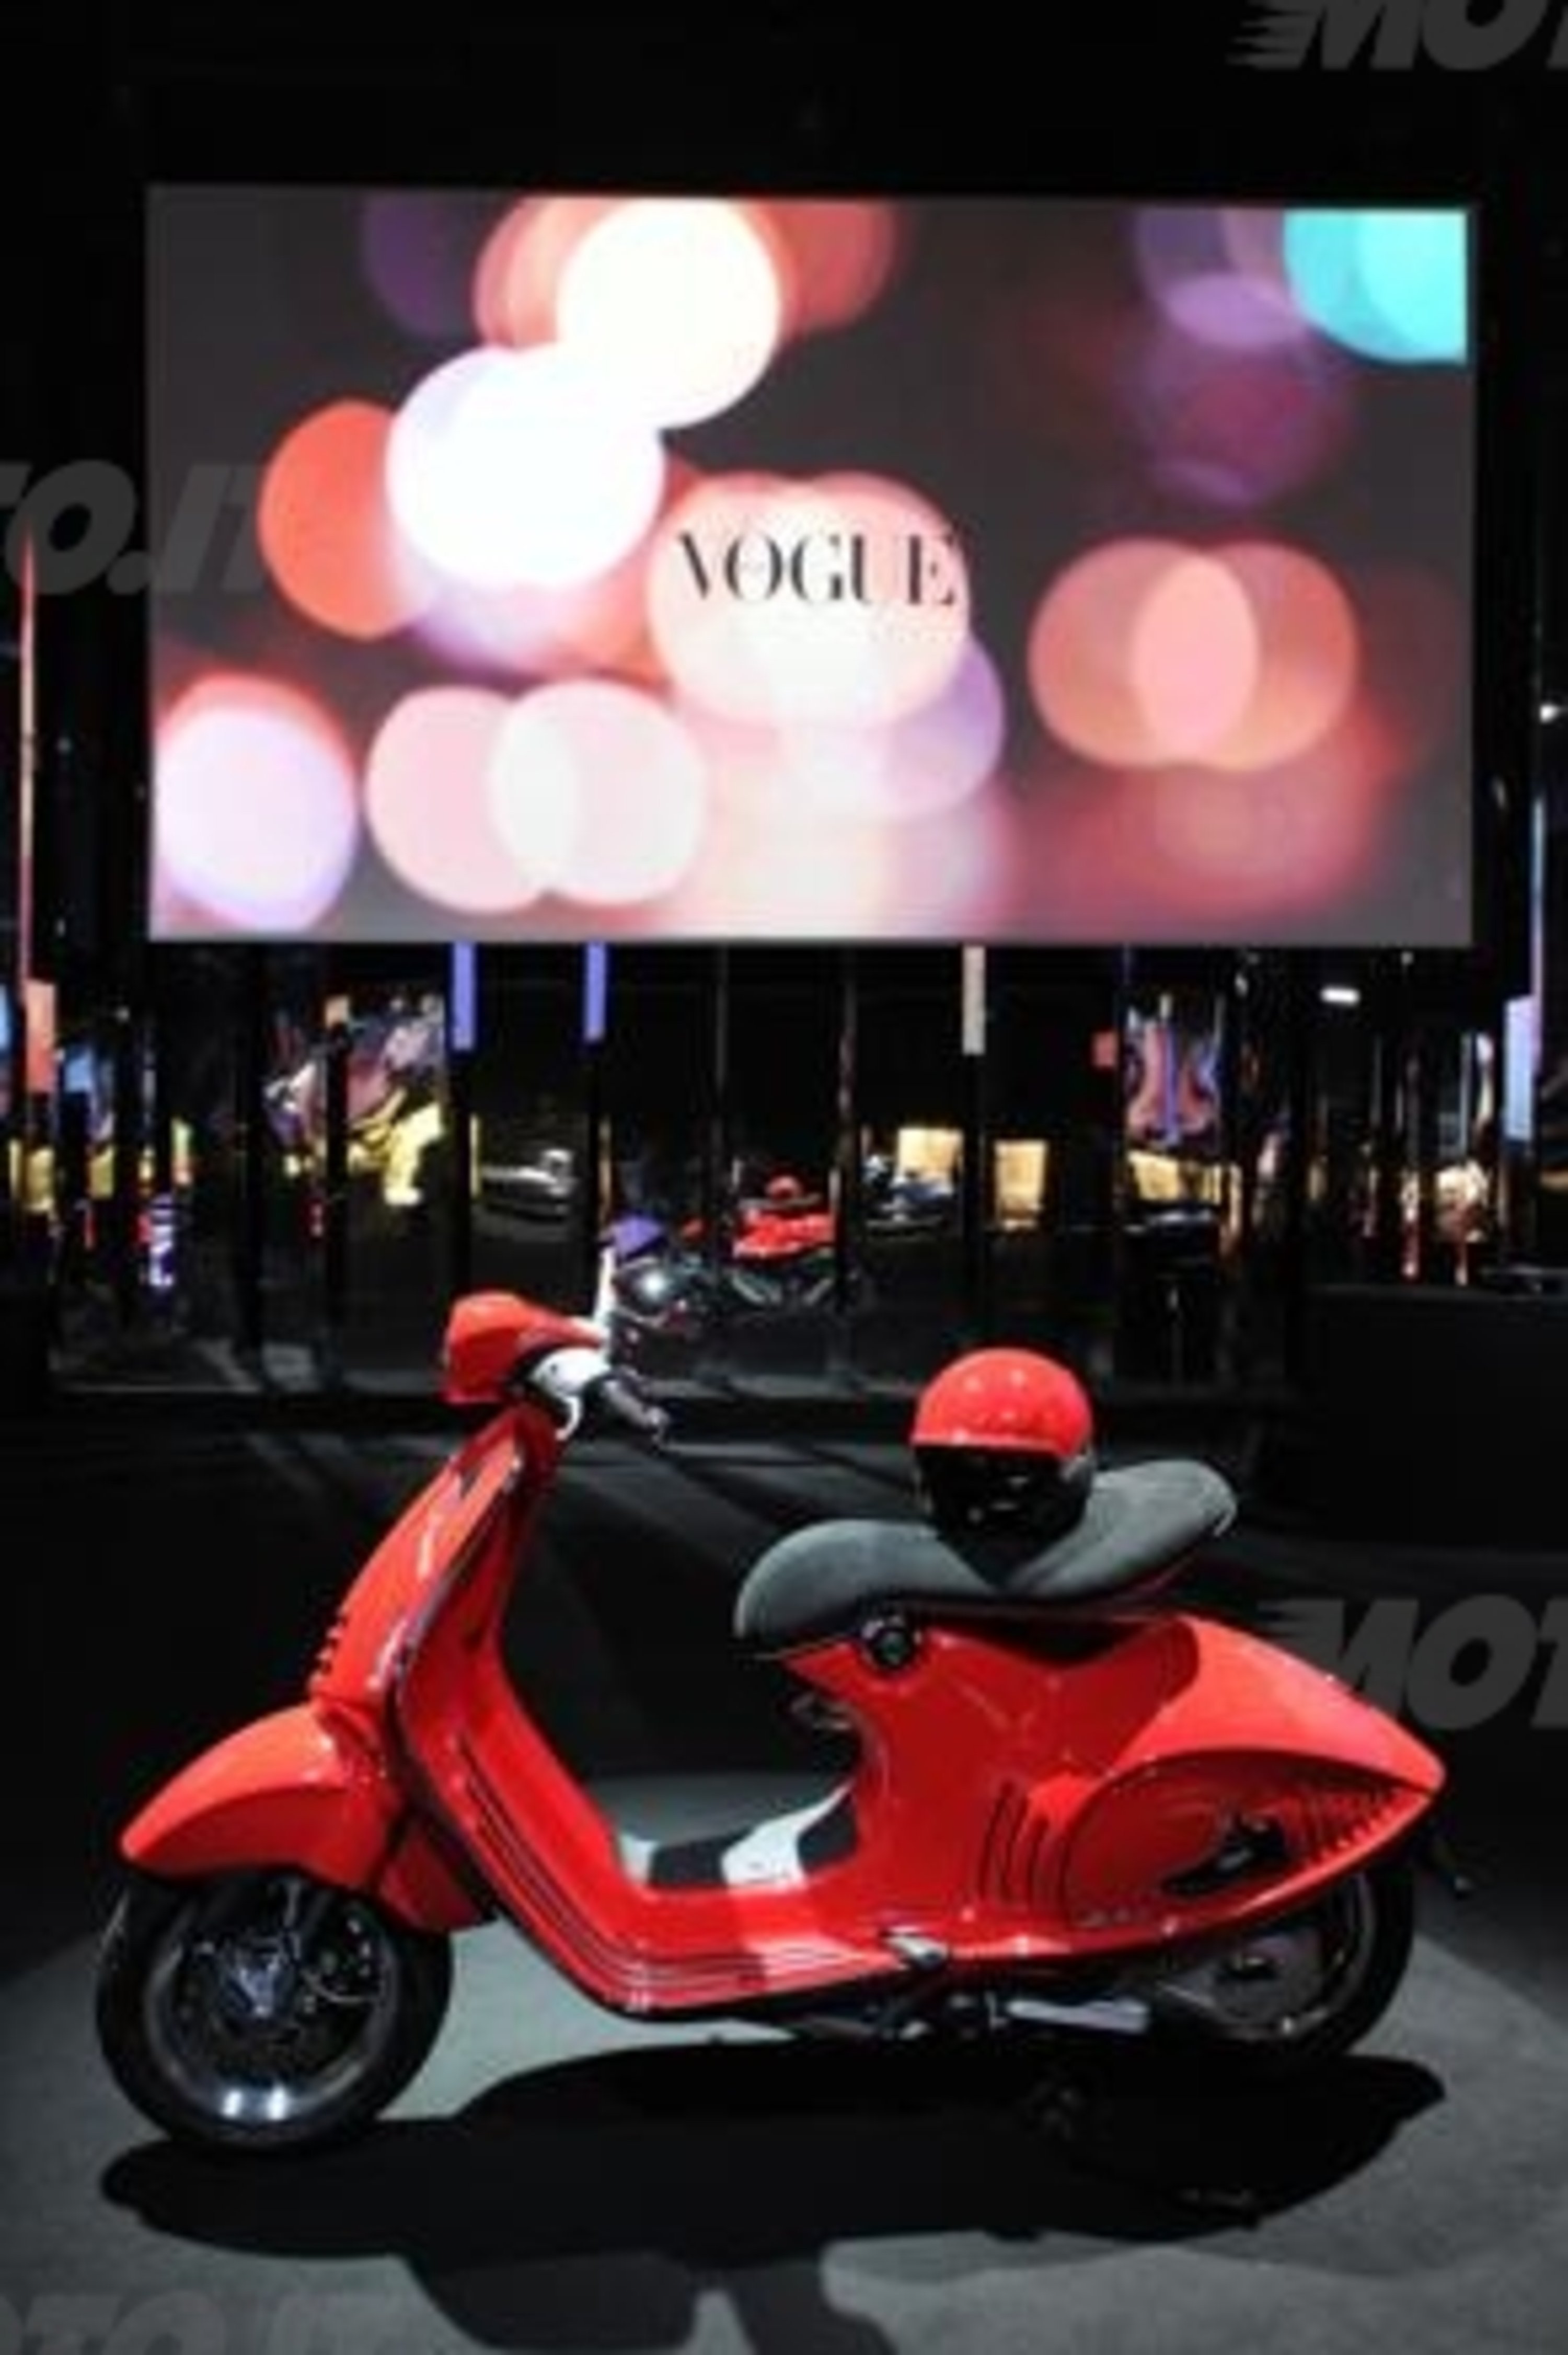 The Unique Vespa 946, Piaggio incontra Vogue Italia